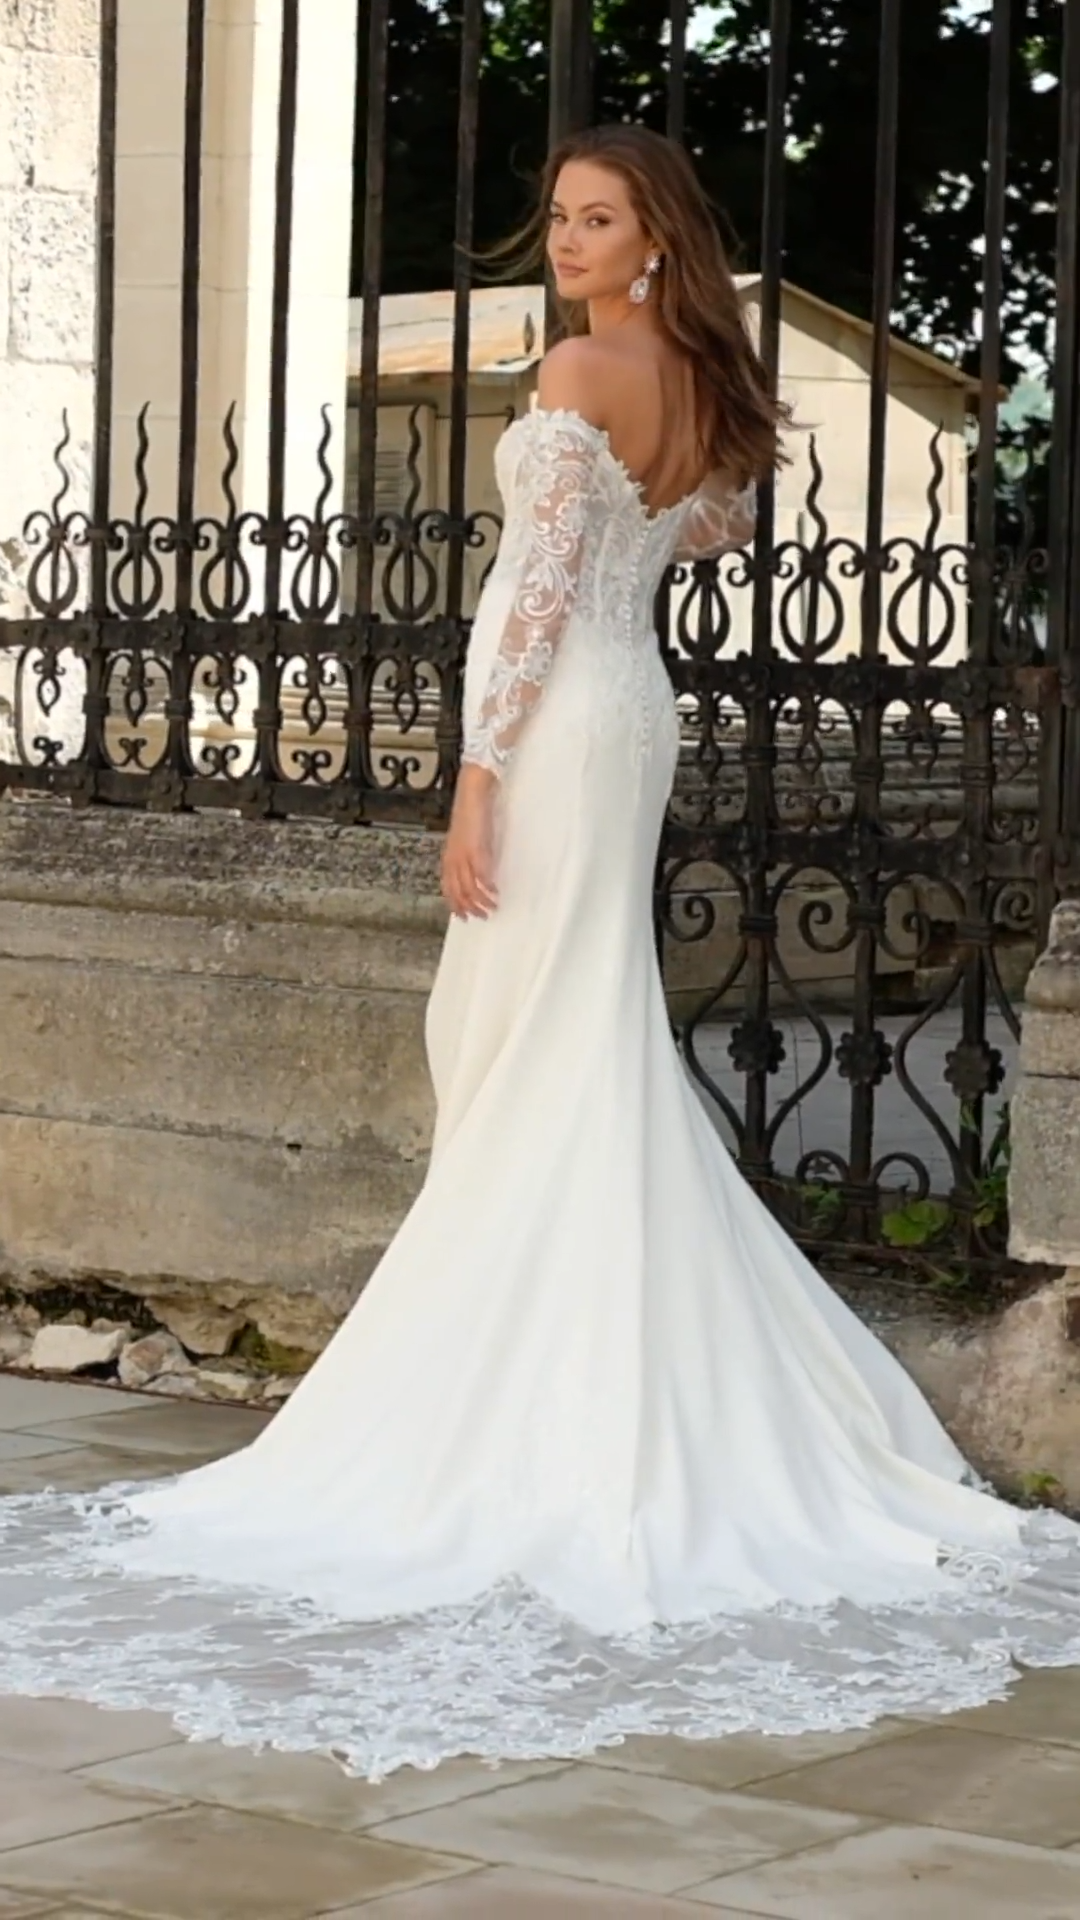 ValStefani WINDSOR lavish designer wedding dresses for the fancy bride